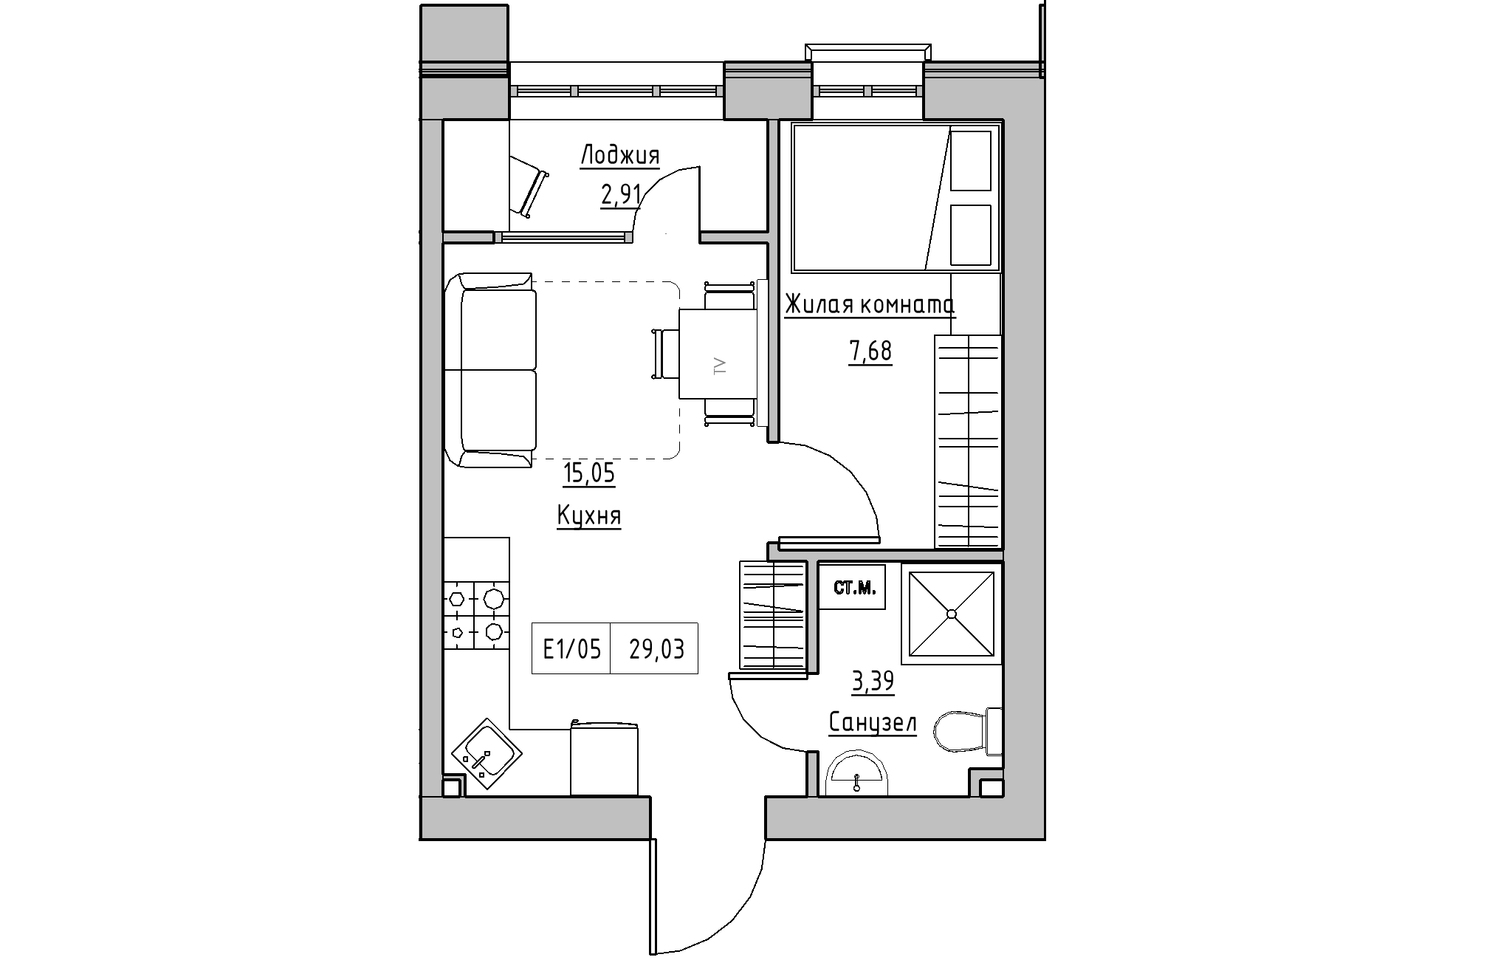 Планировка 1-к квартира площей 29.03м2, KS-010-02/0007.